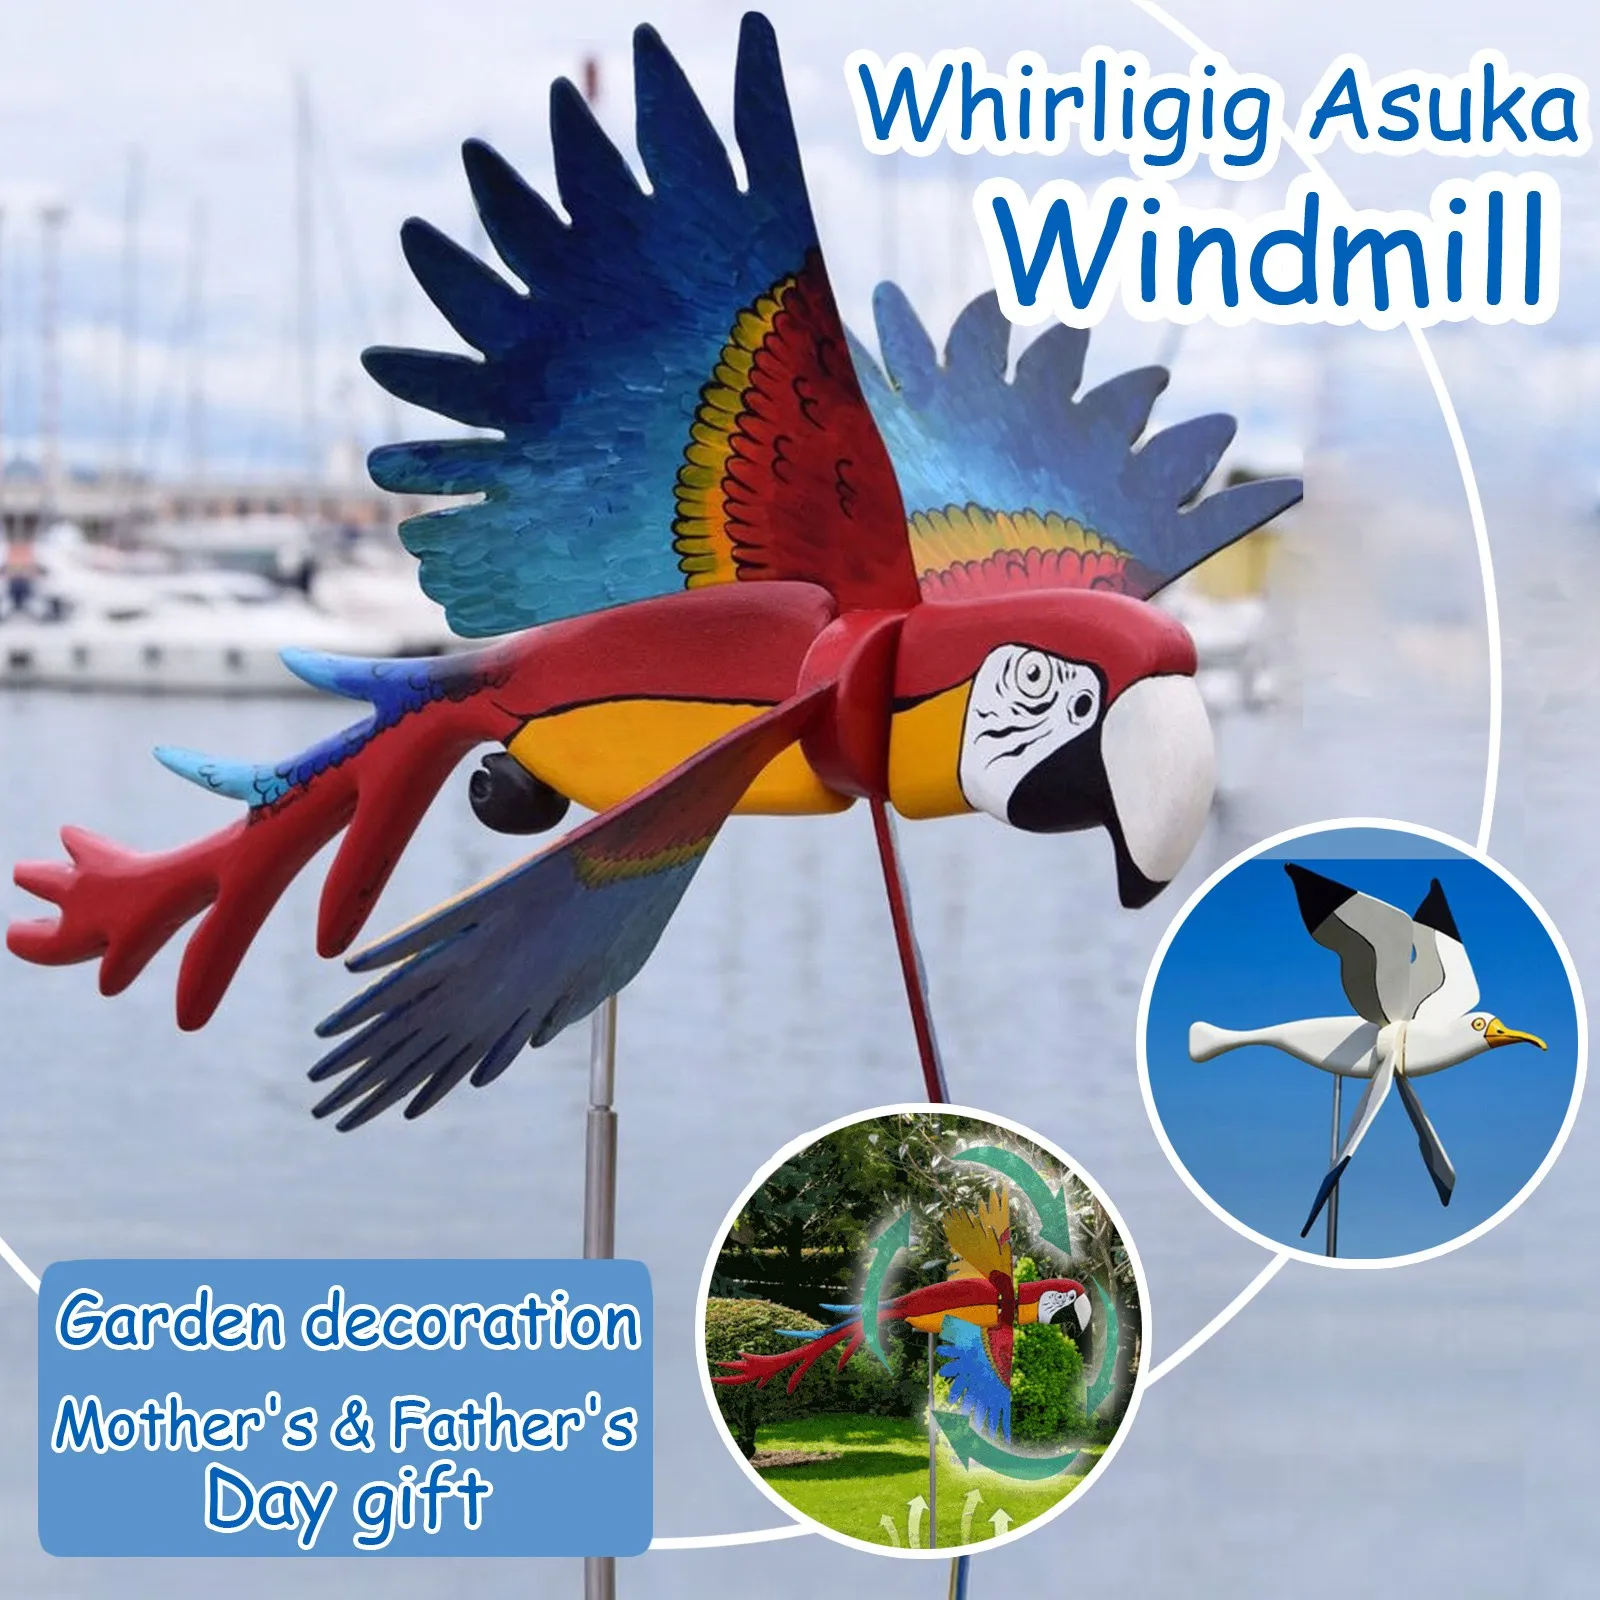 Whirligig Asuka WindmüHle Fliegender Vogel Whirly Garten WindräDer Dekor P R2F5 